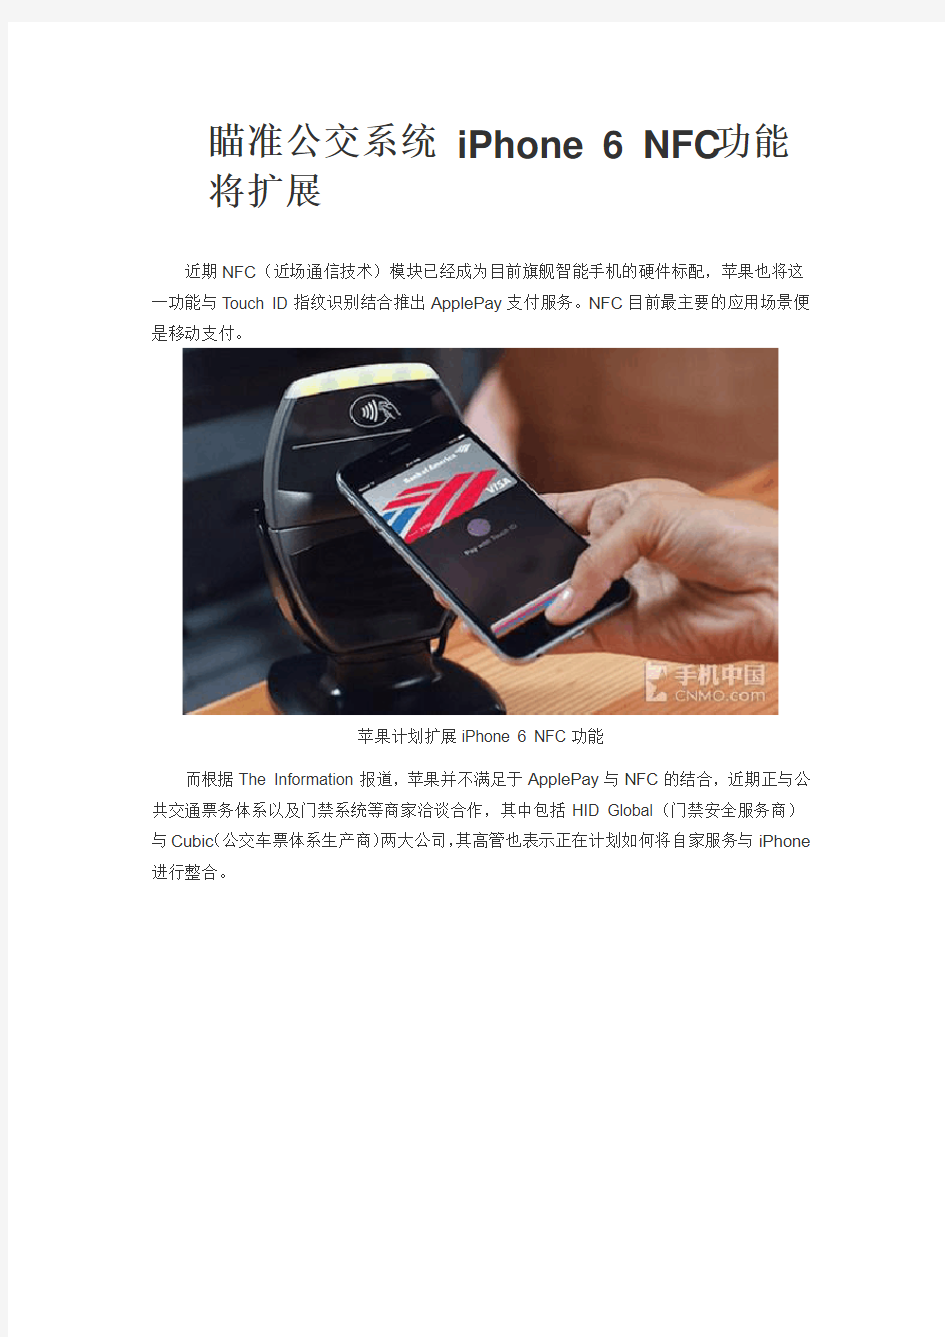 瞄准公交系统 iPhone 6 NFC功能将扩展